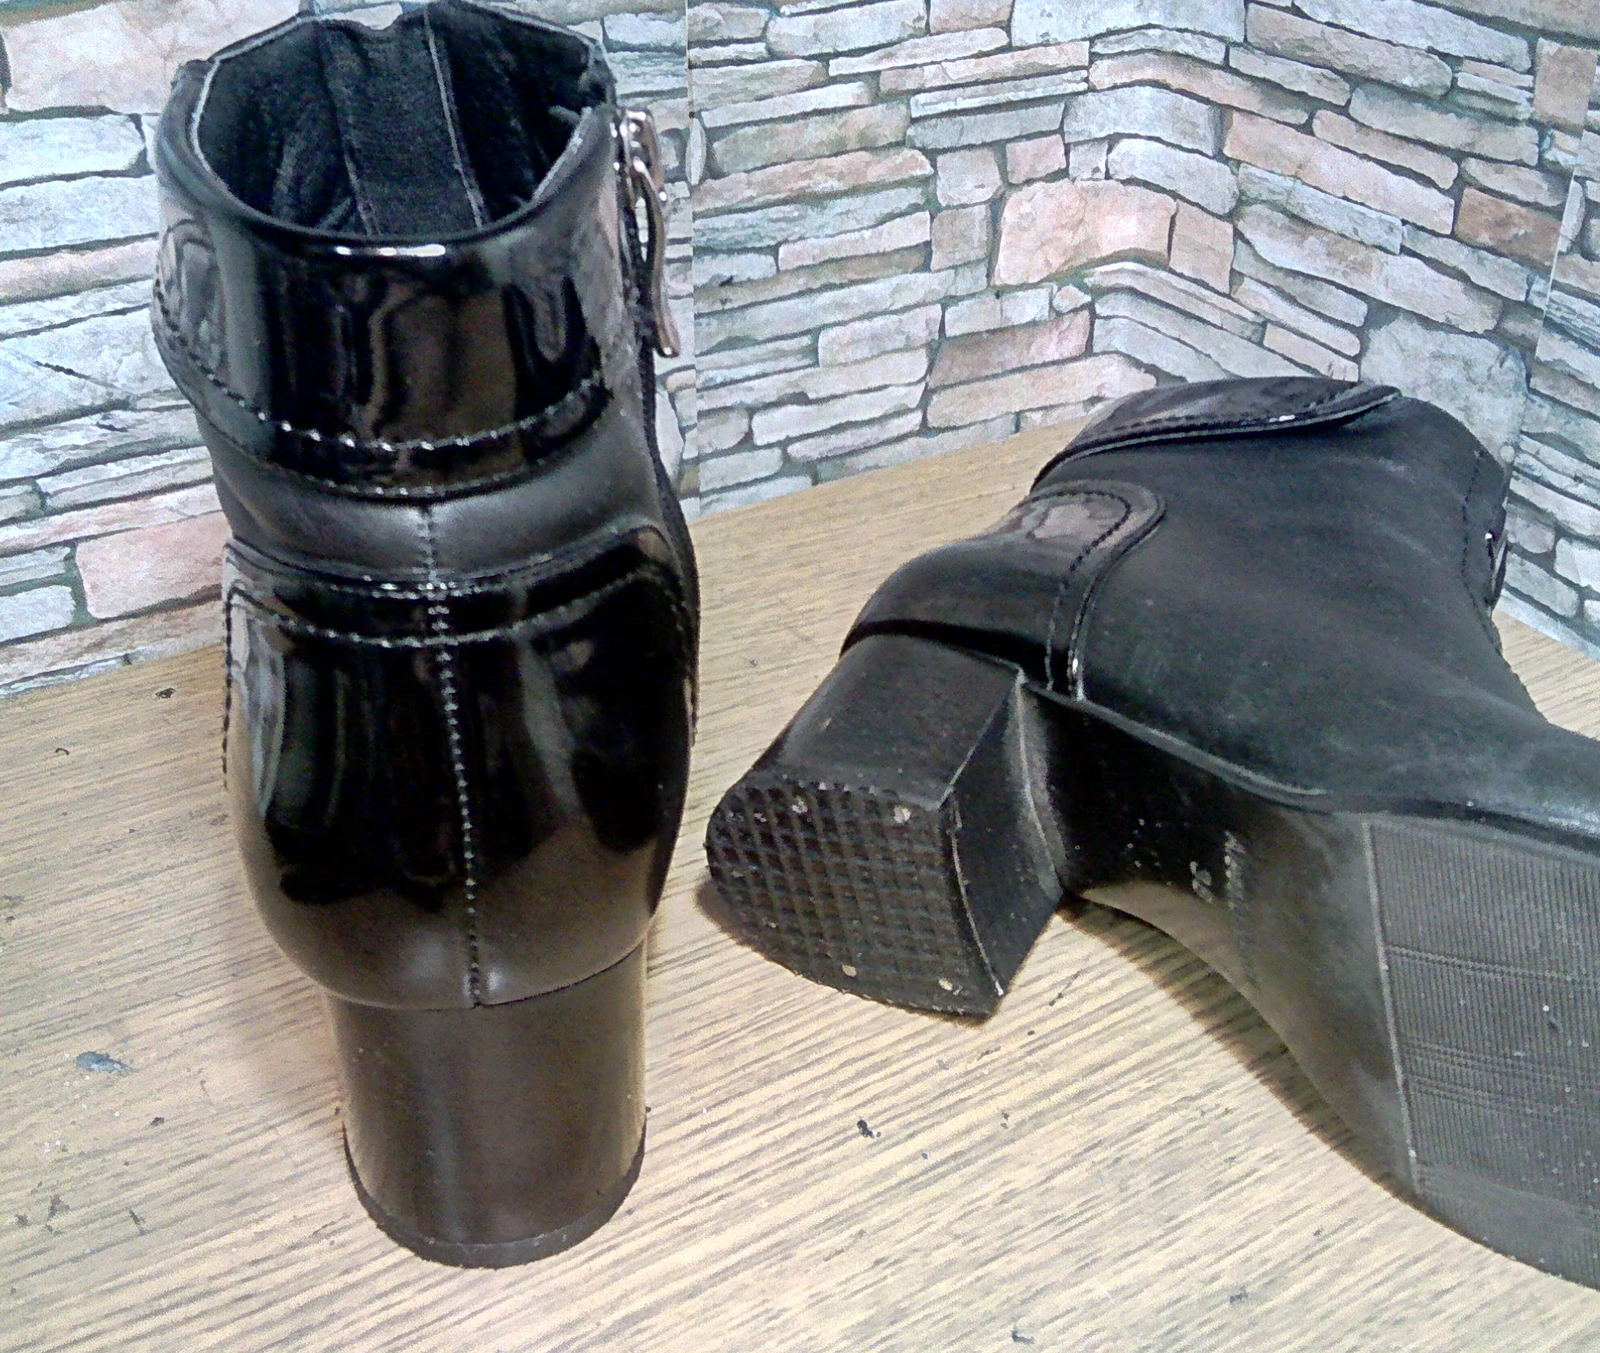 Medium sized heels. - My, Shoe repair, Heels, Work, The photo, Longpost